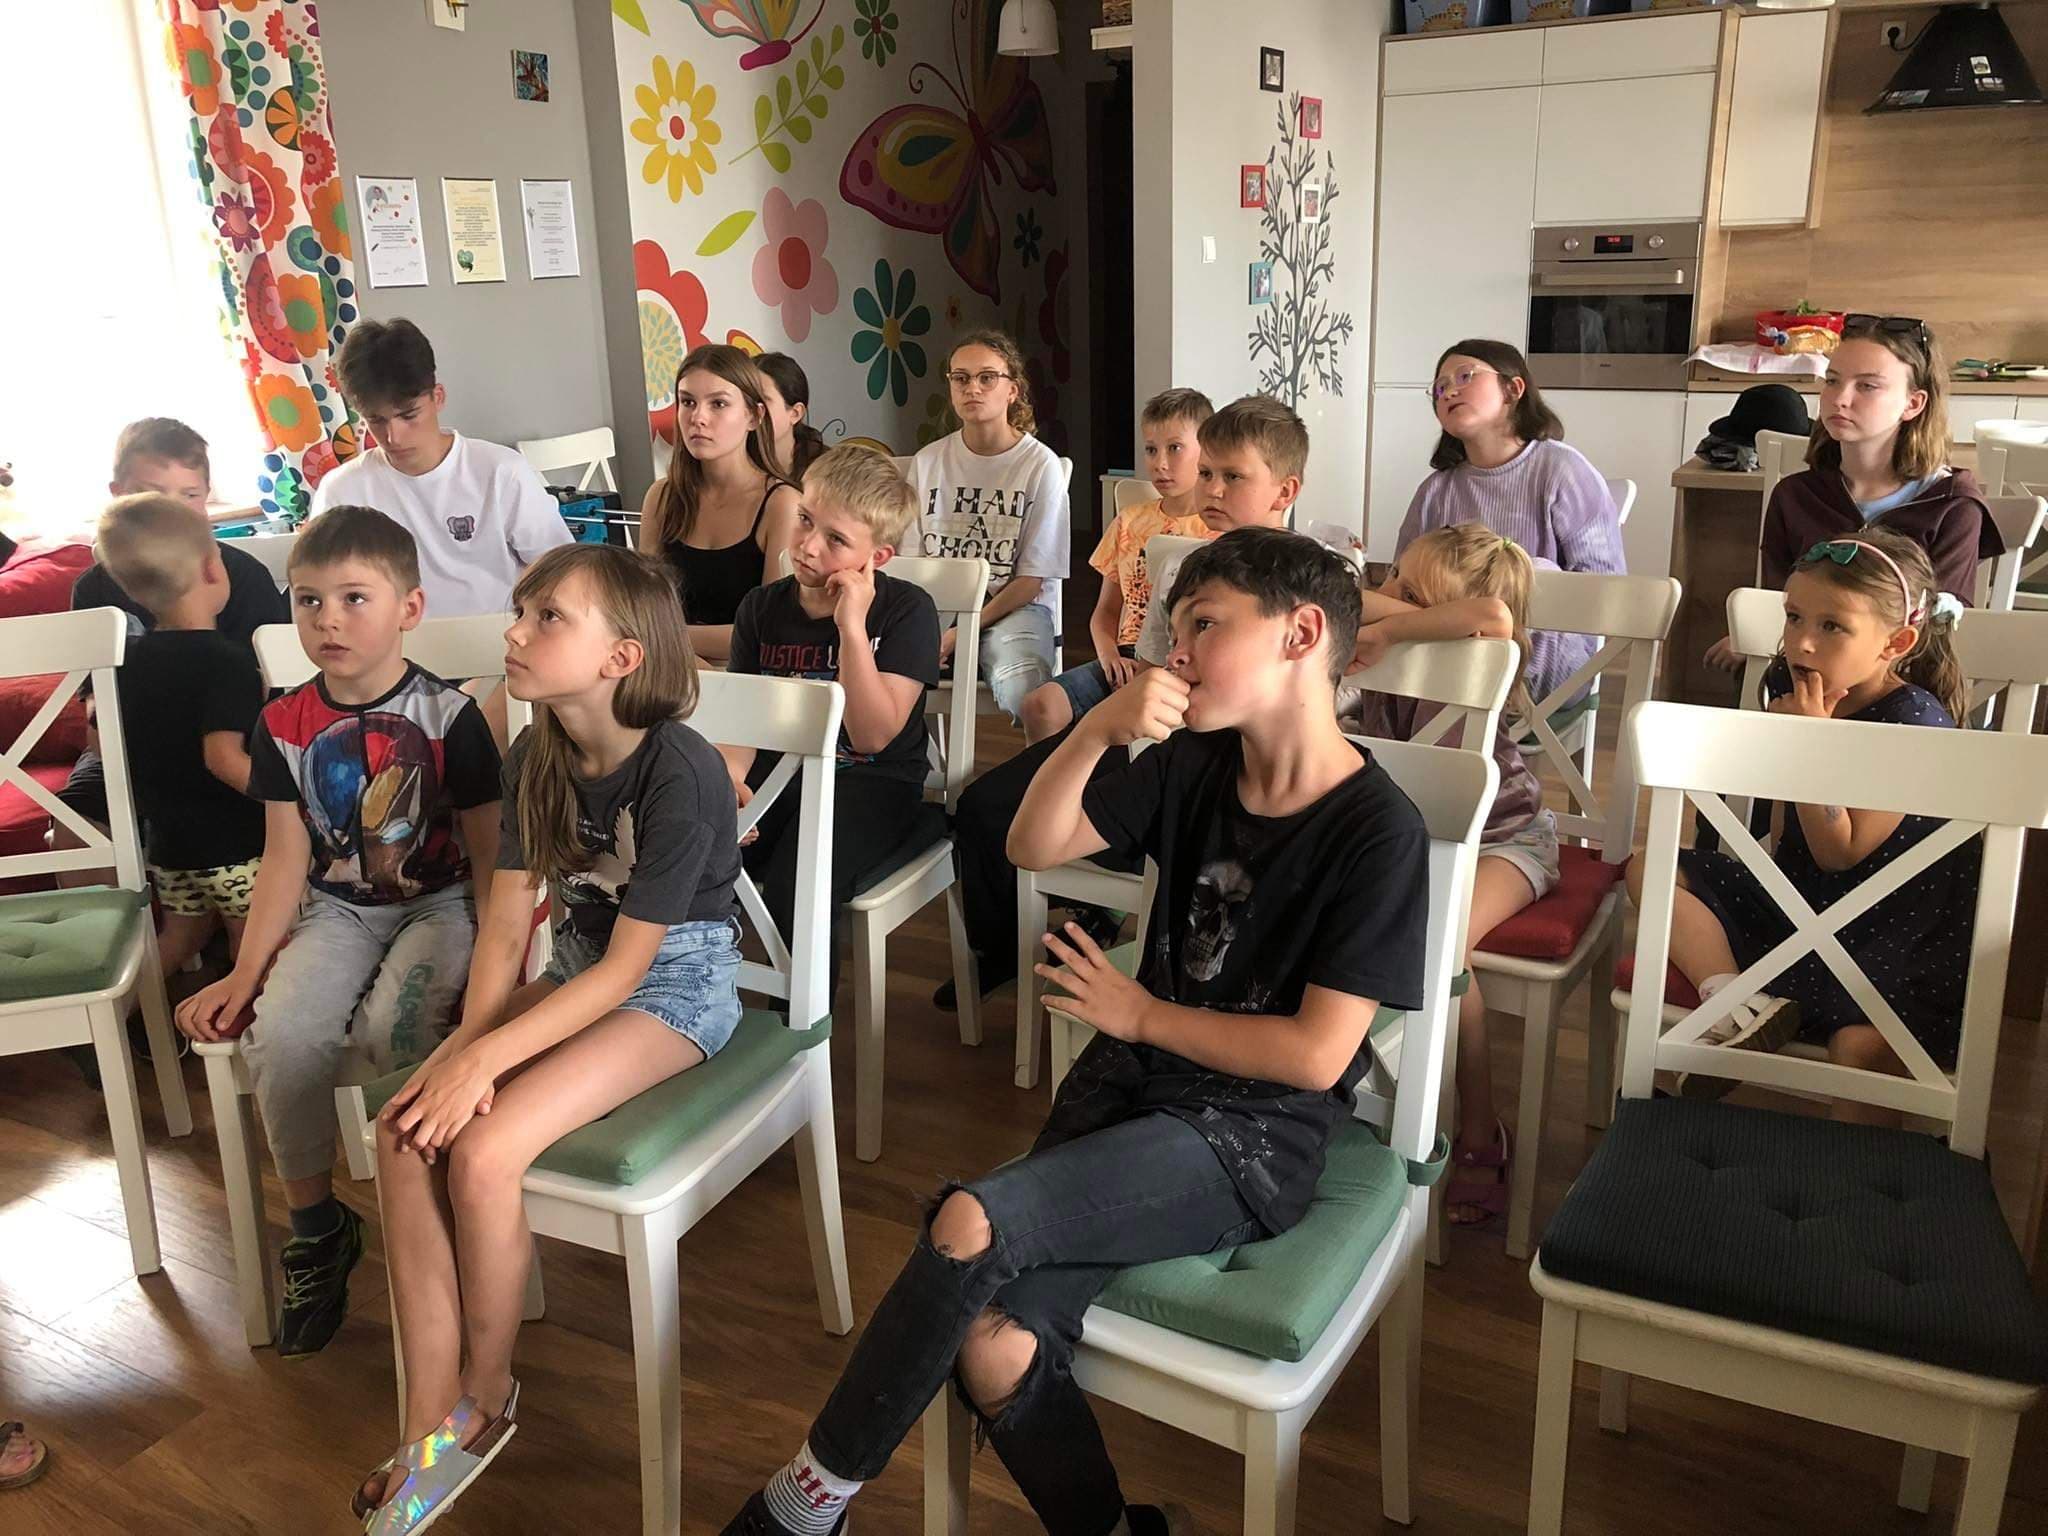 grupa dzieci siedzi na krzesłach, w pomieszczeniu, z uwagą słuchają kogoś kto przed nimi stoi